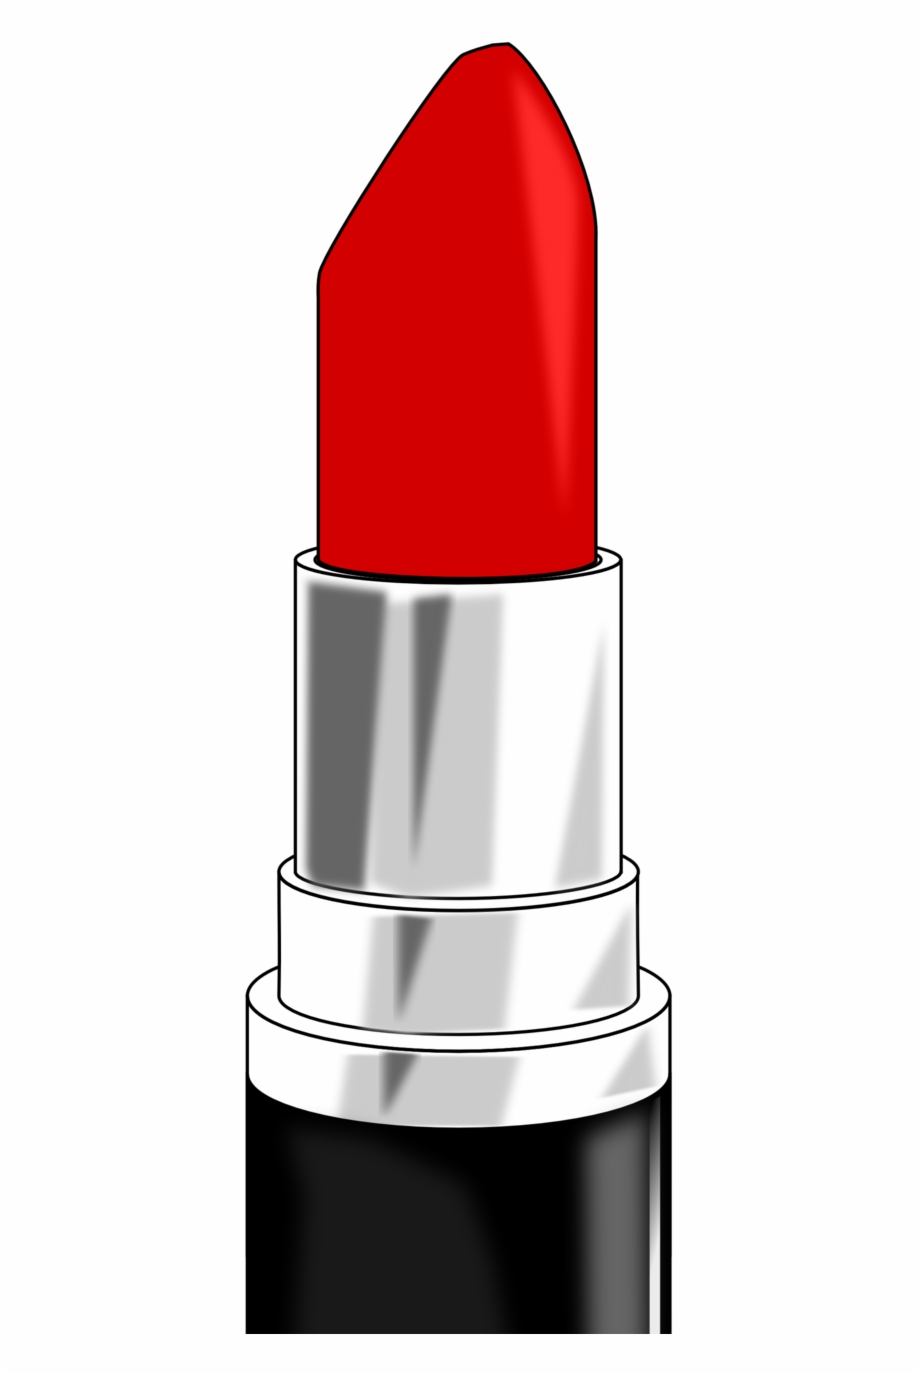 Public Domain Clip Red Lipstick Clipart